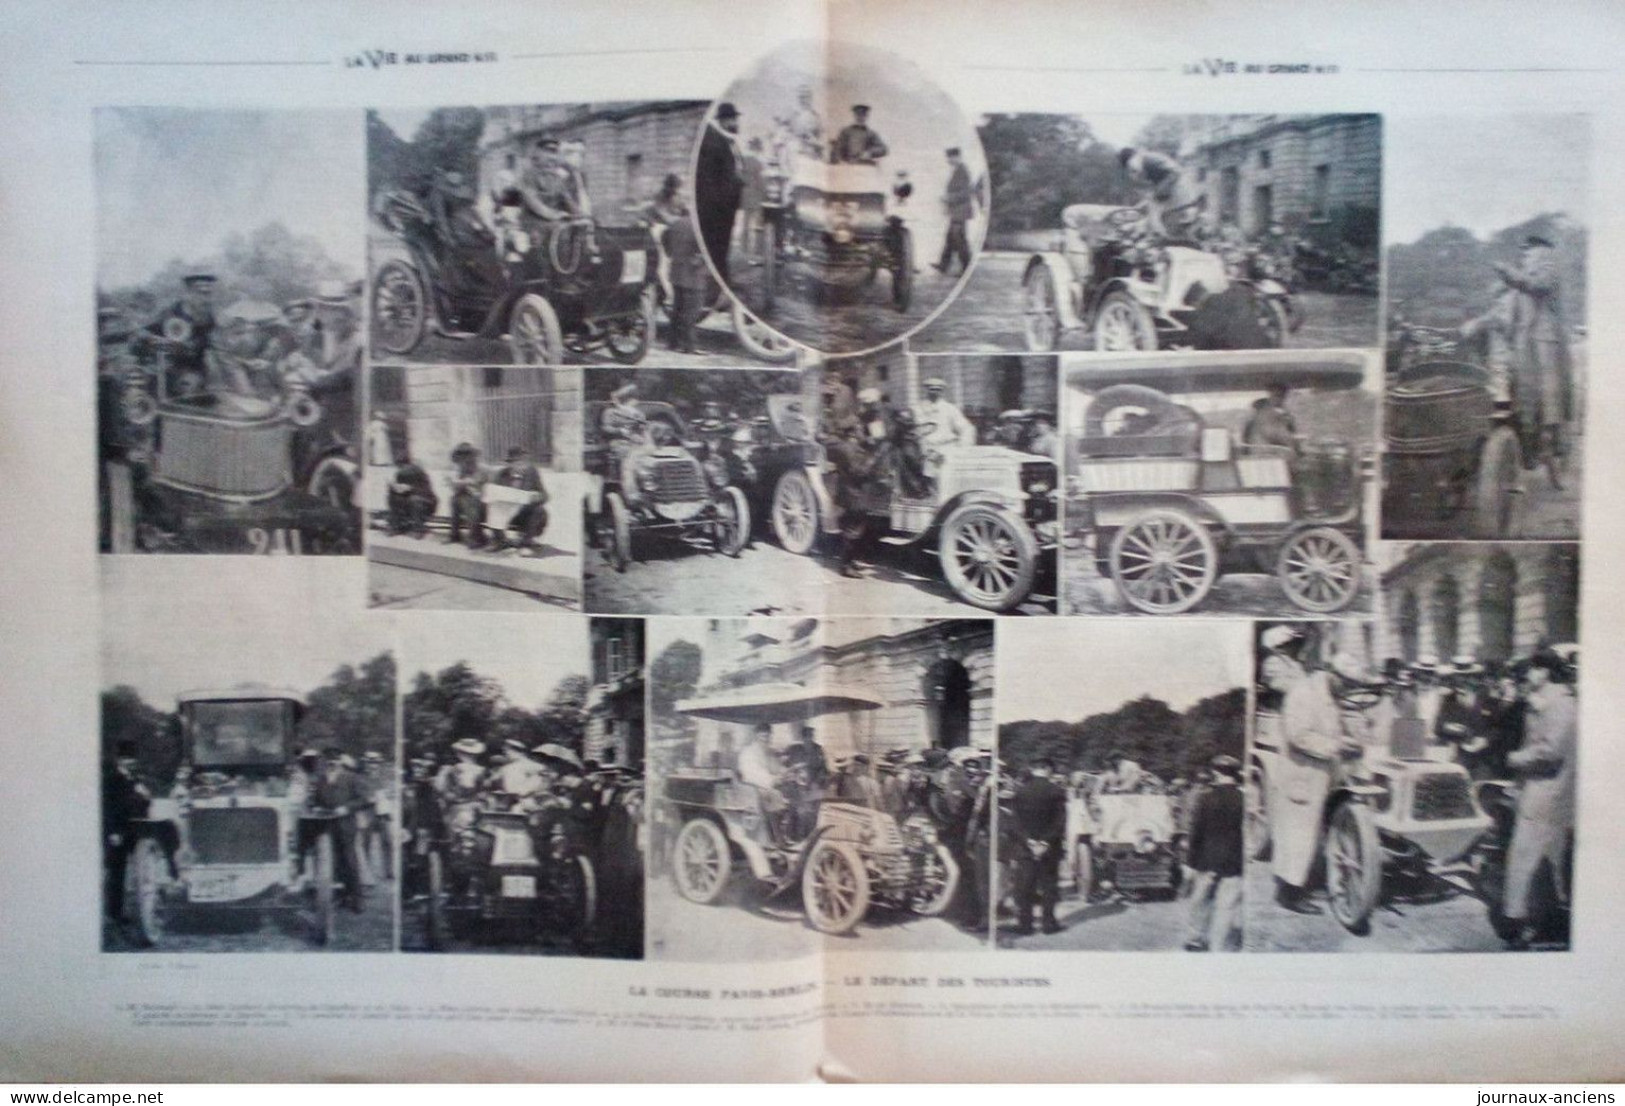 1901 COURSE AUTOMOBILE PARIS BERLIN - LA BARONNE ZUYLE DE NYEVELT - LA VIE AU GRAND AIR - Autosport - F1